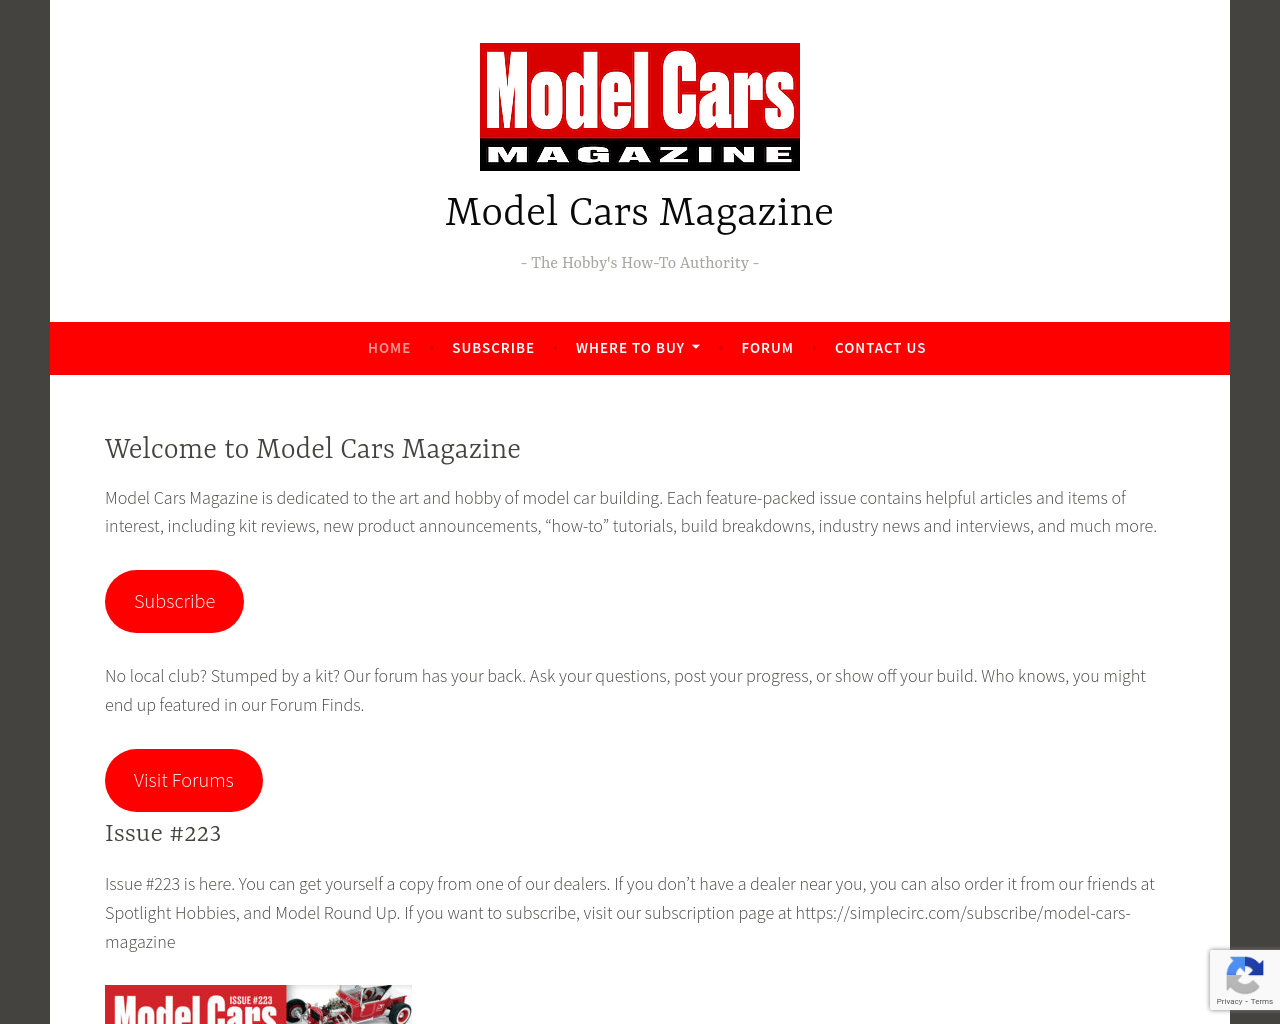 modelcarsmag.com